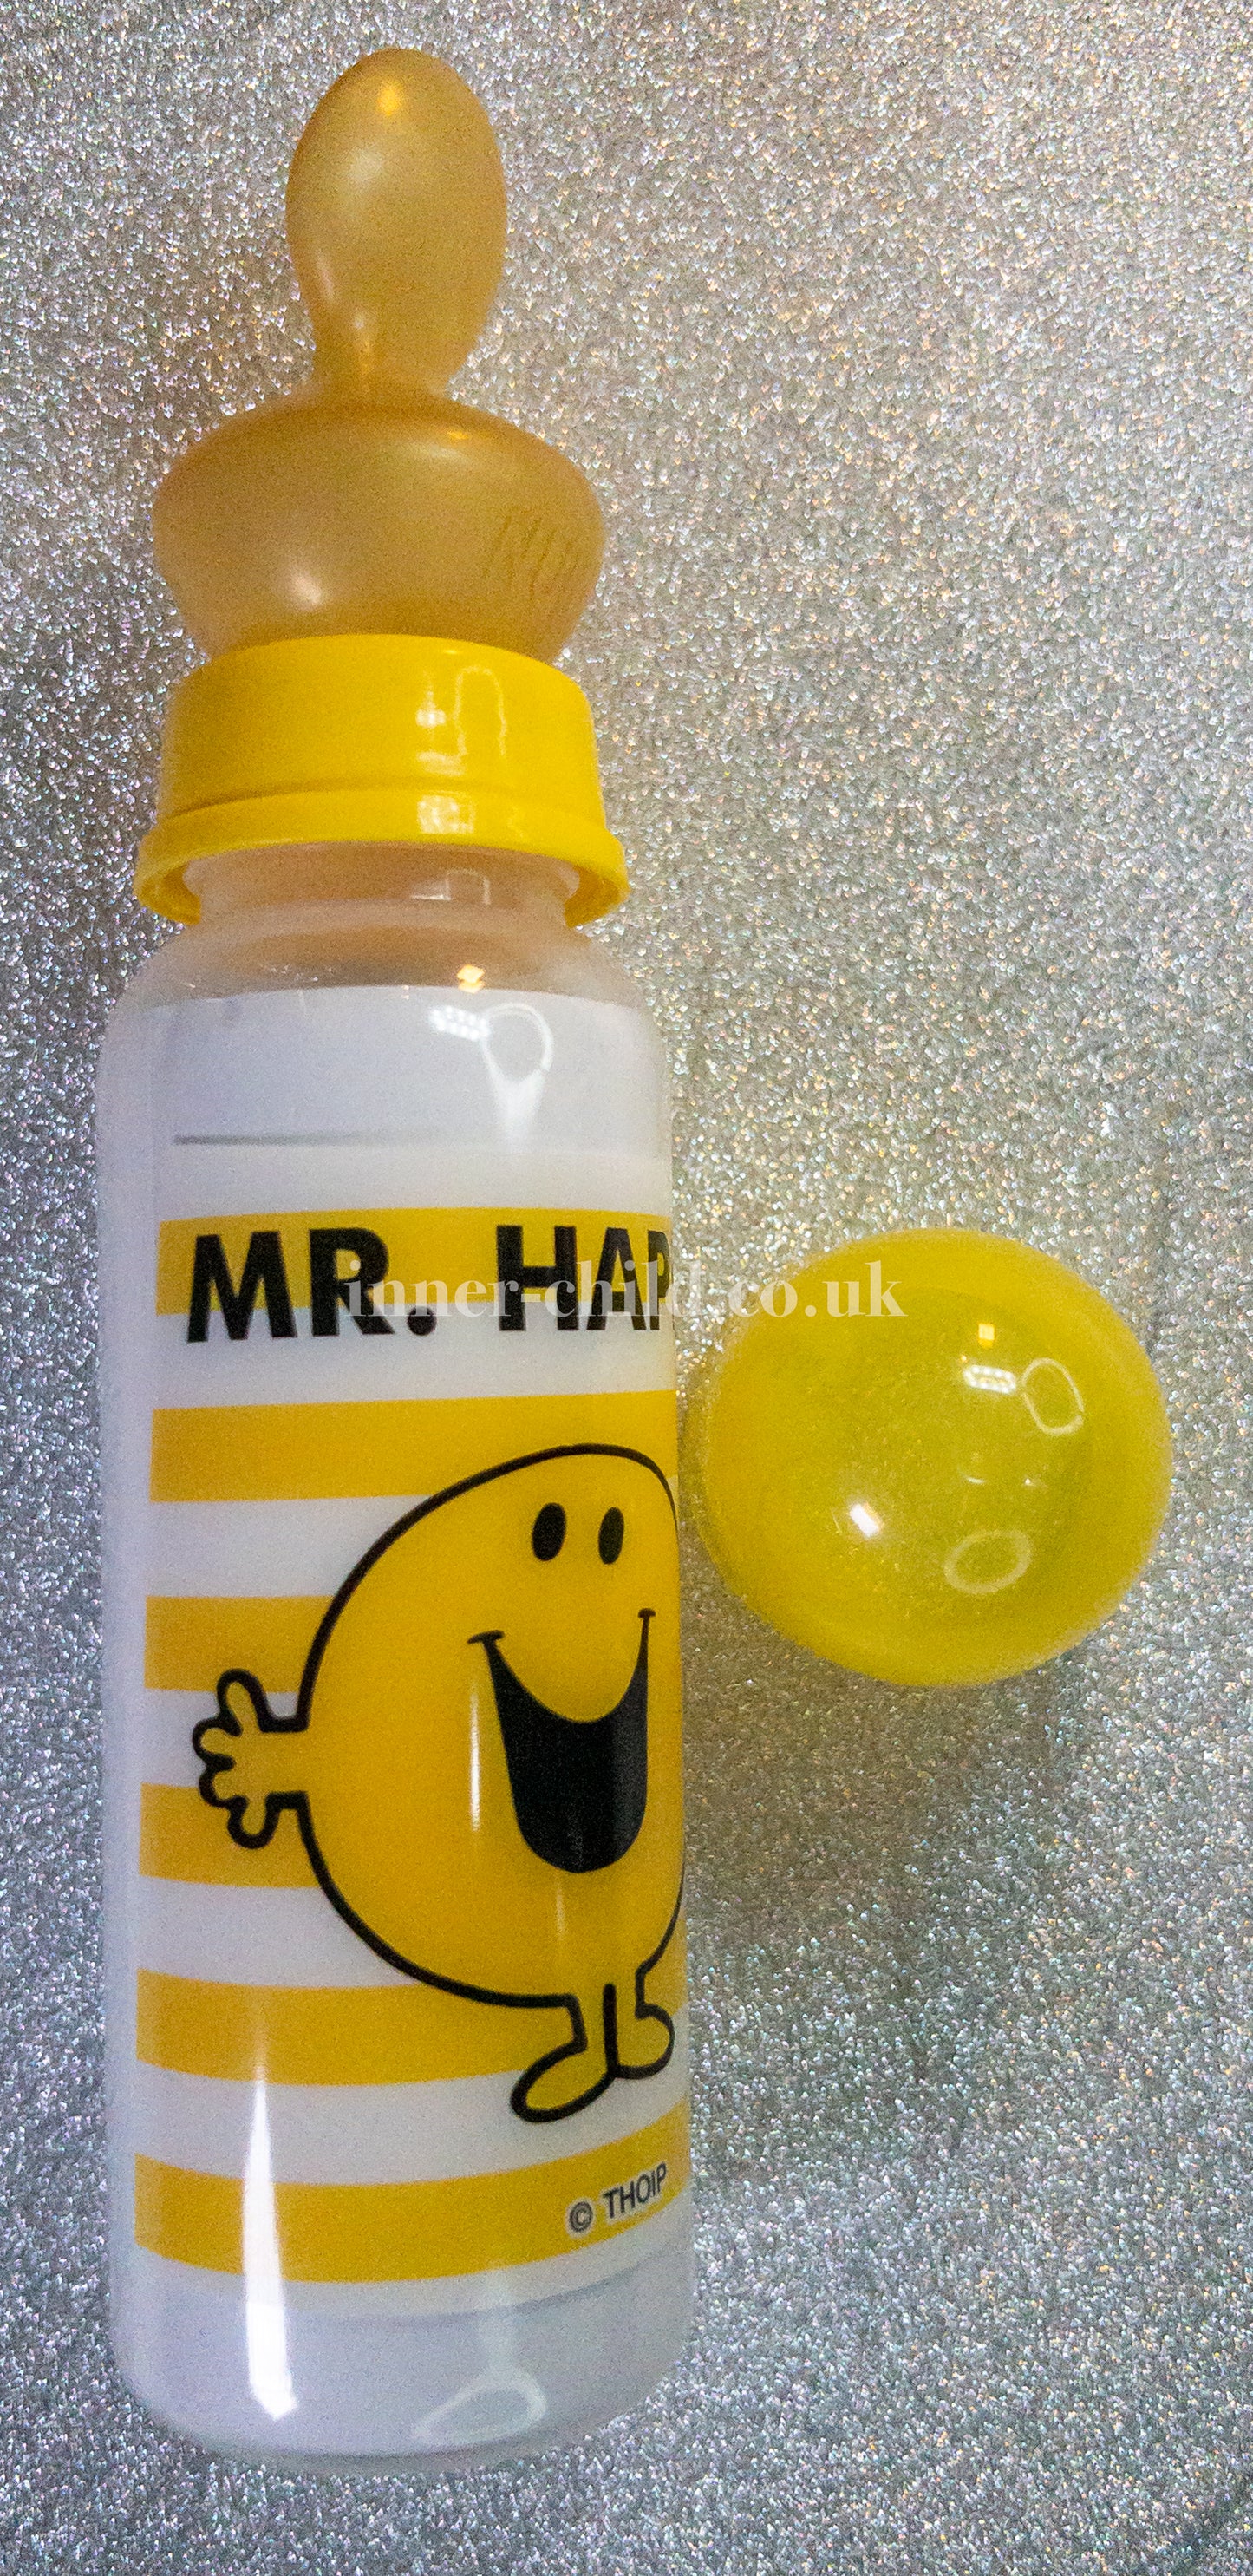 Mr Happy bottle